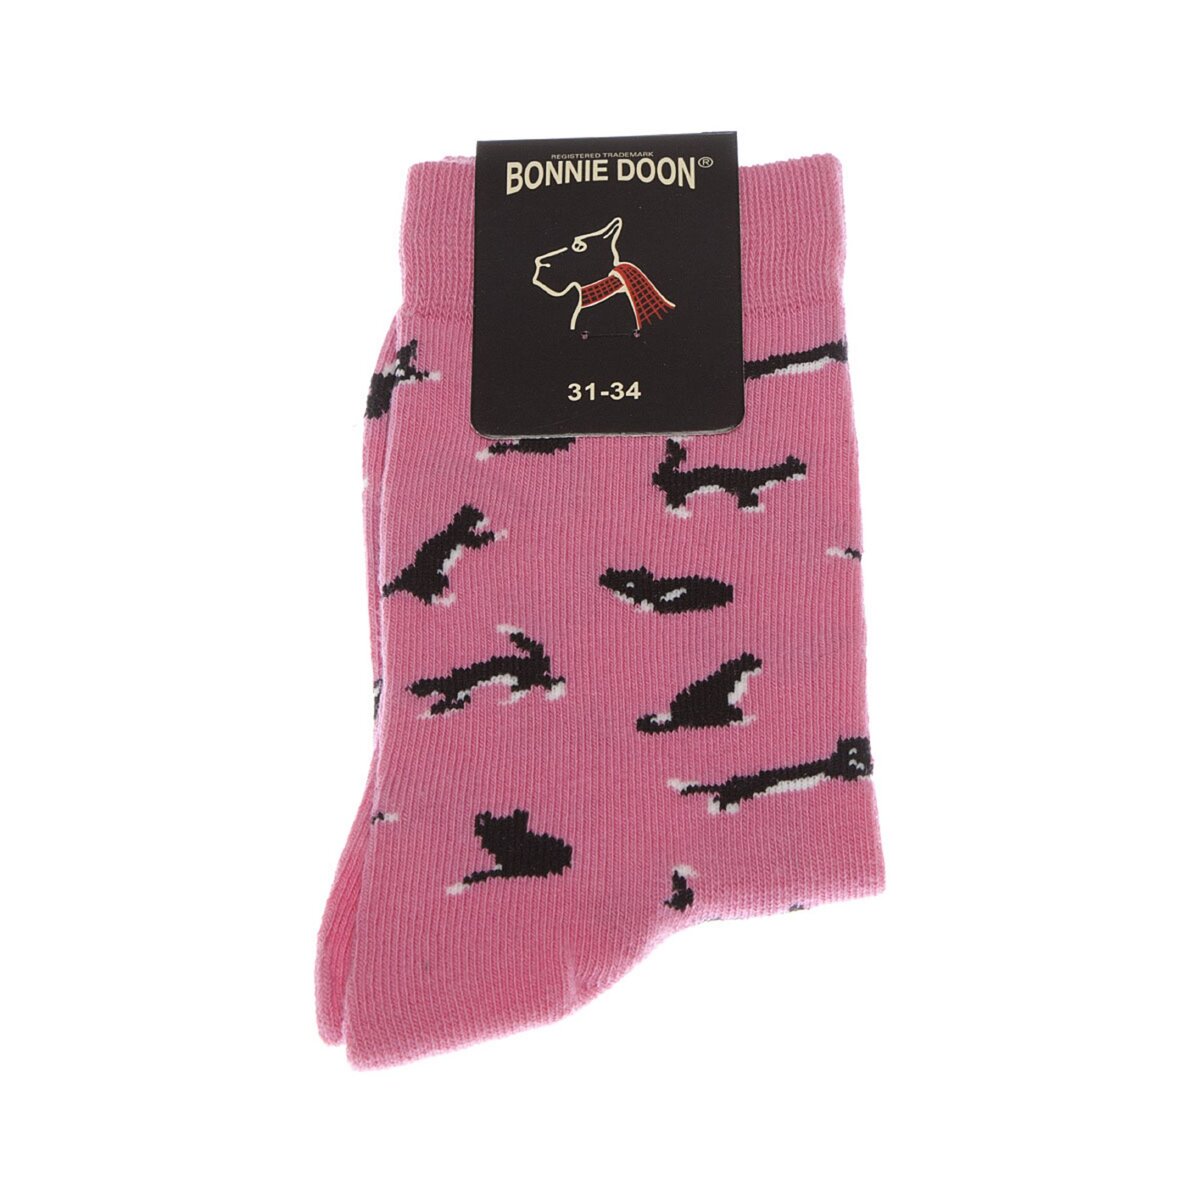 BONNIE DOON Chaussette Mi-Hautes - 1 paire - Resserrage cou de pied - Animal - Coton - Pussy cat sock